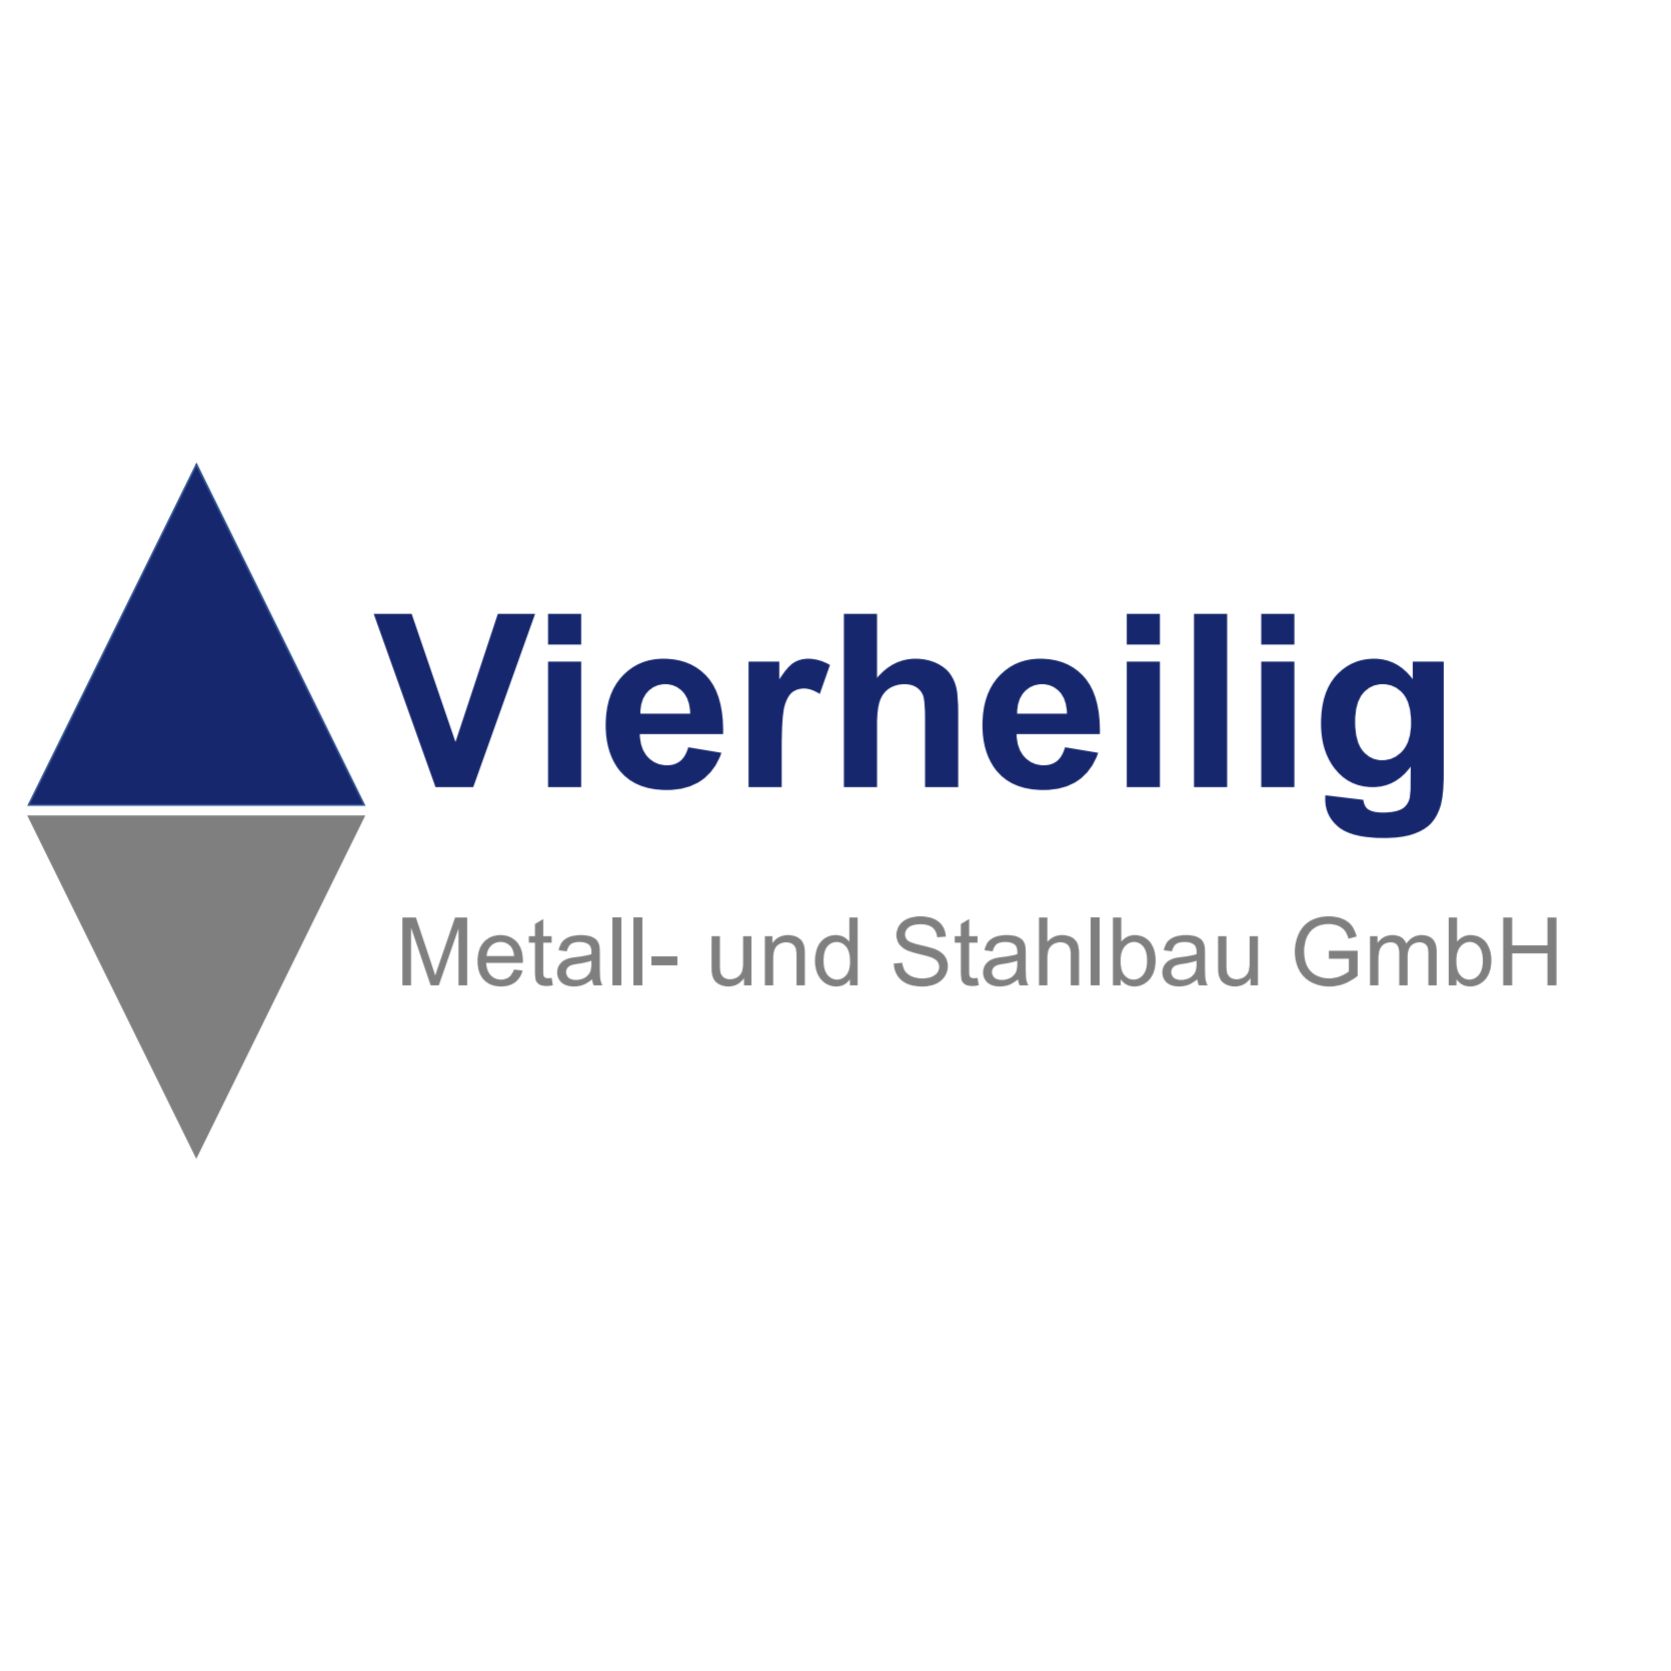 Vierheilig Metall- und Stahlbau GmbH Logo